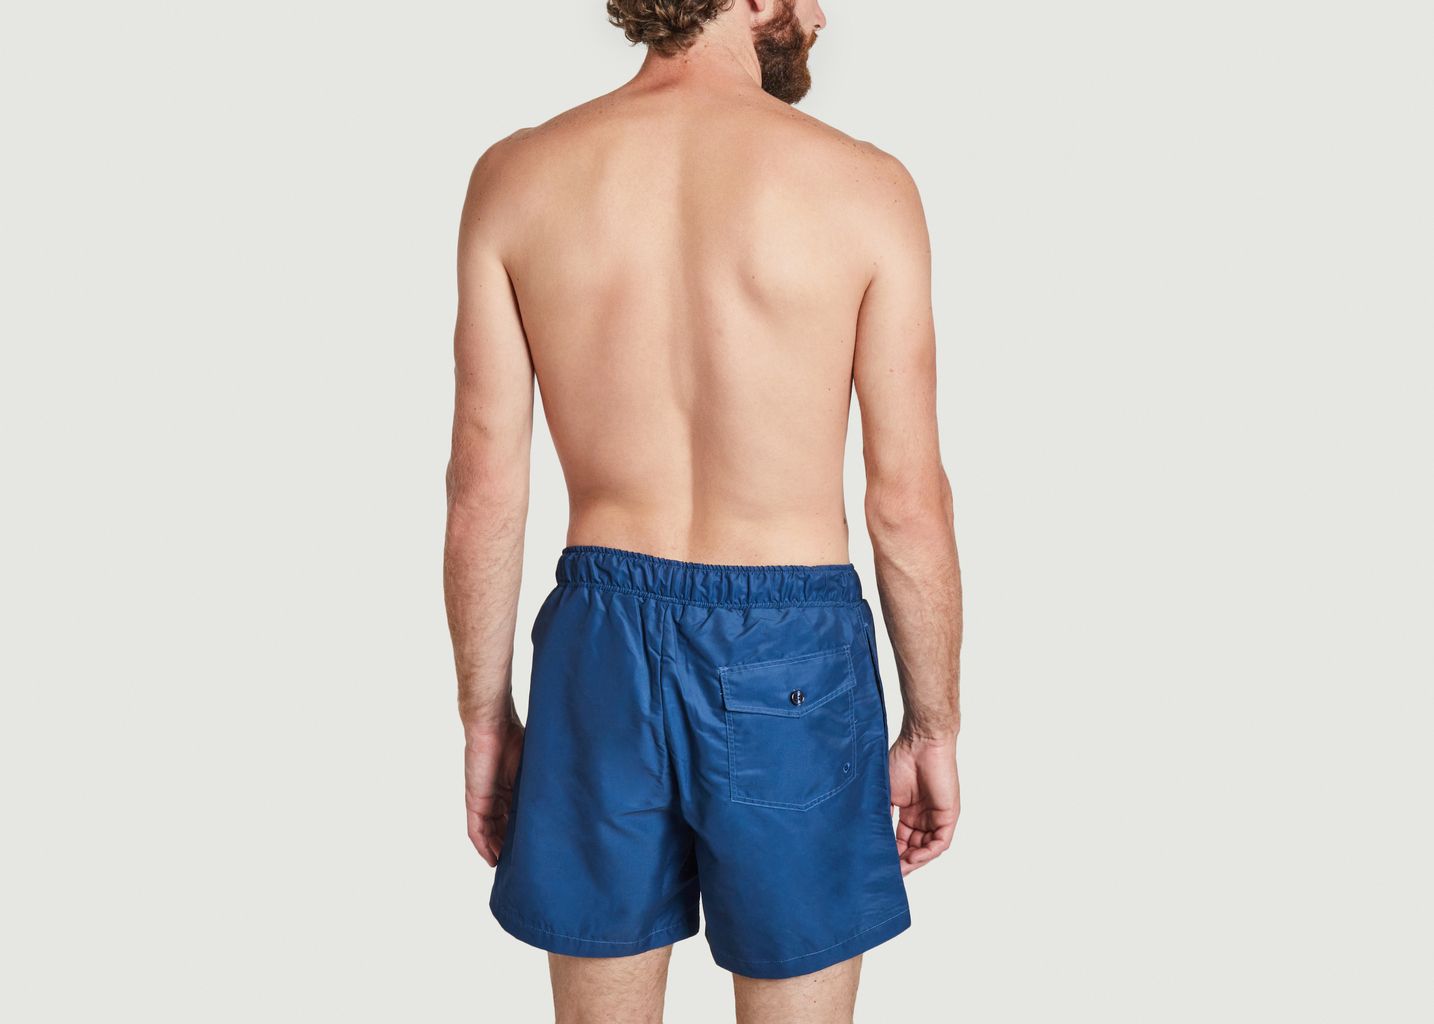 Daily swim shorts - Reception Clothing